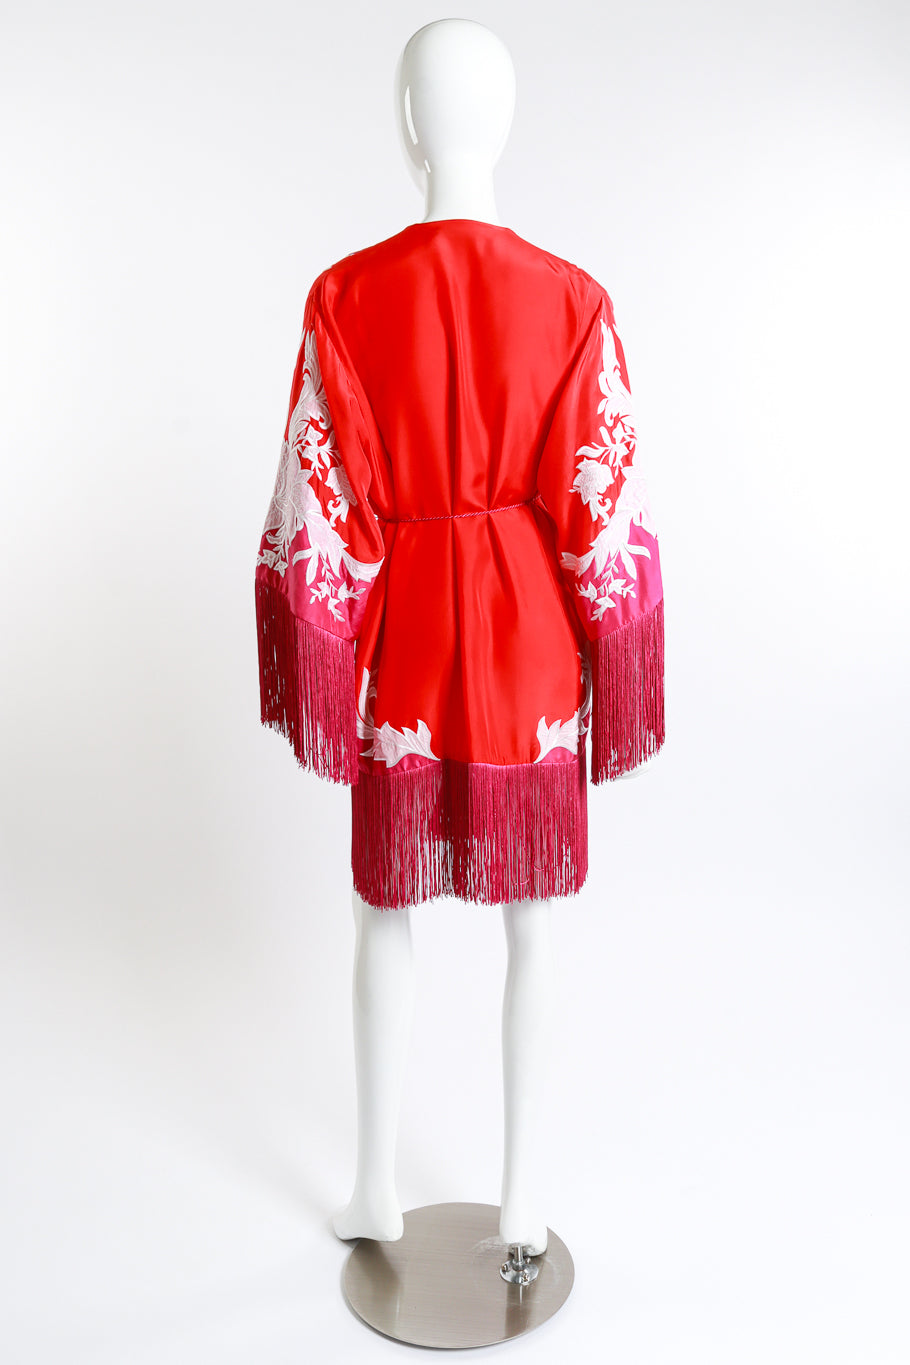 Ungaro Embroidered Floral Fringe Jacket back on mannequin @recess la